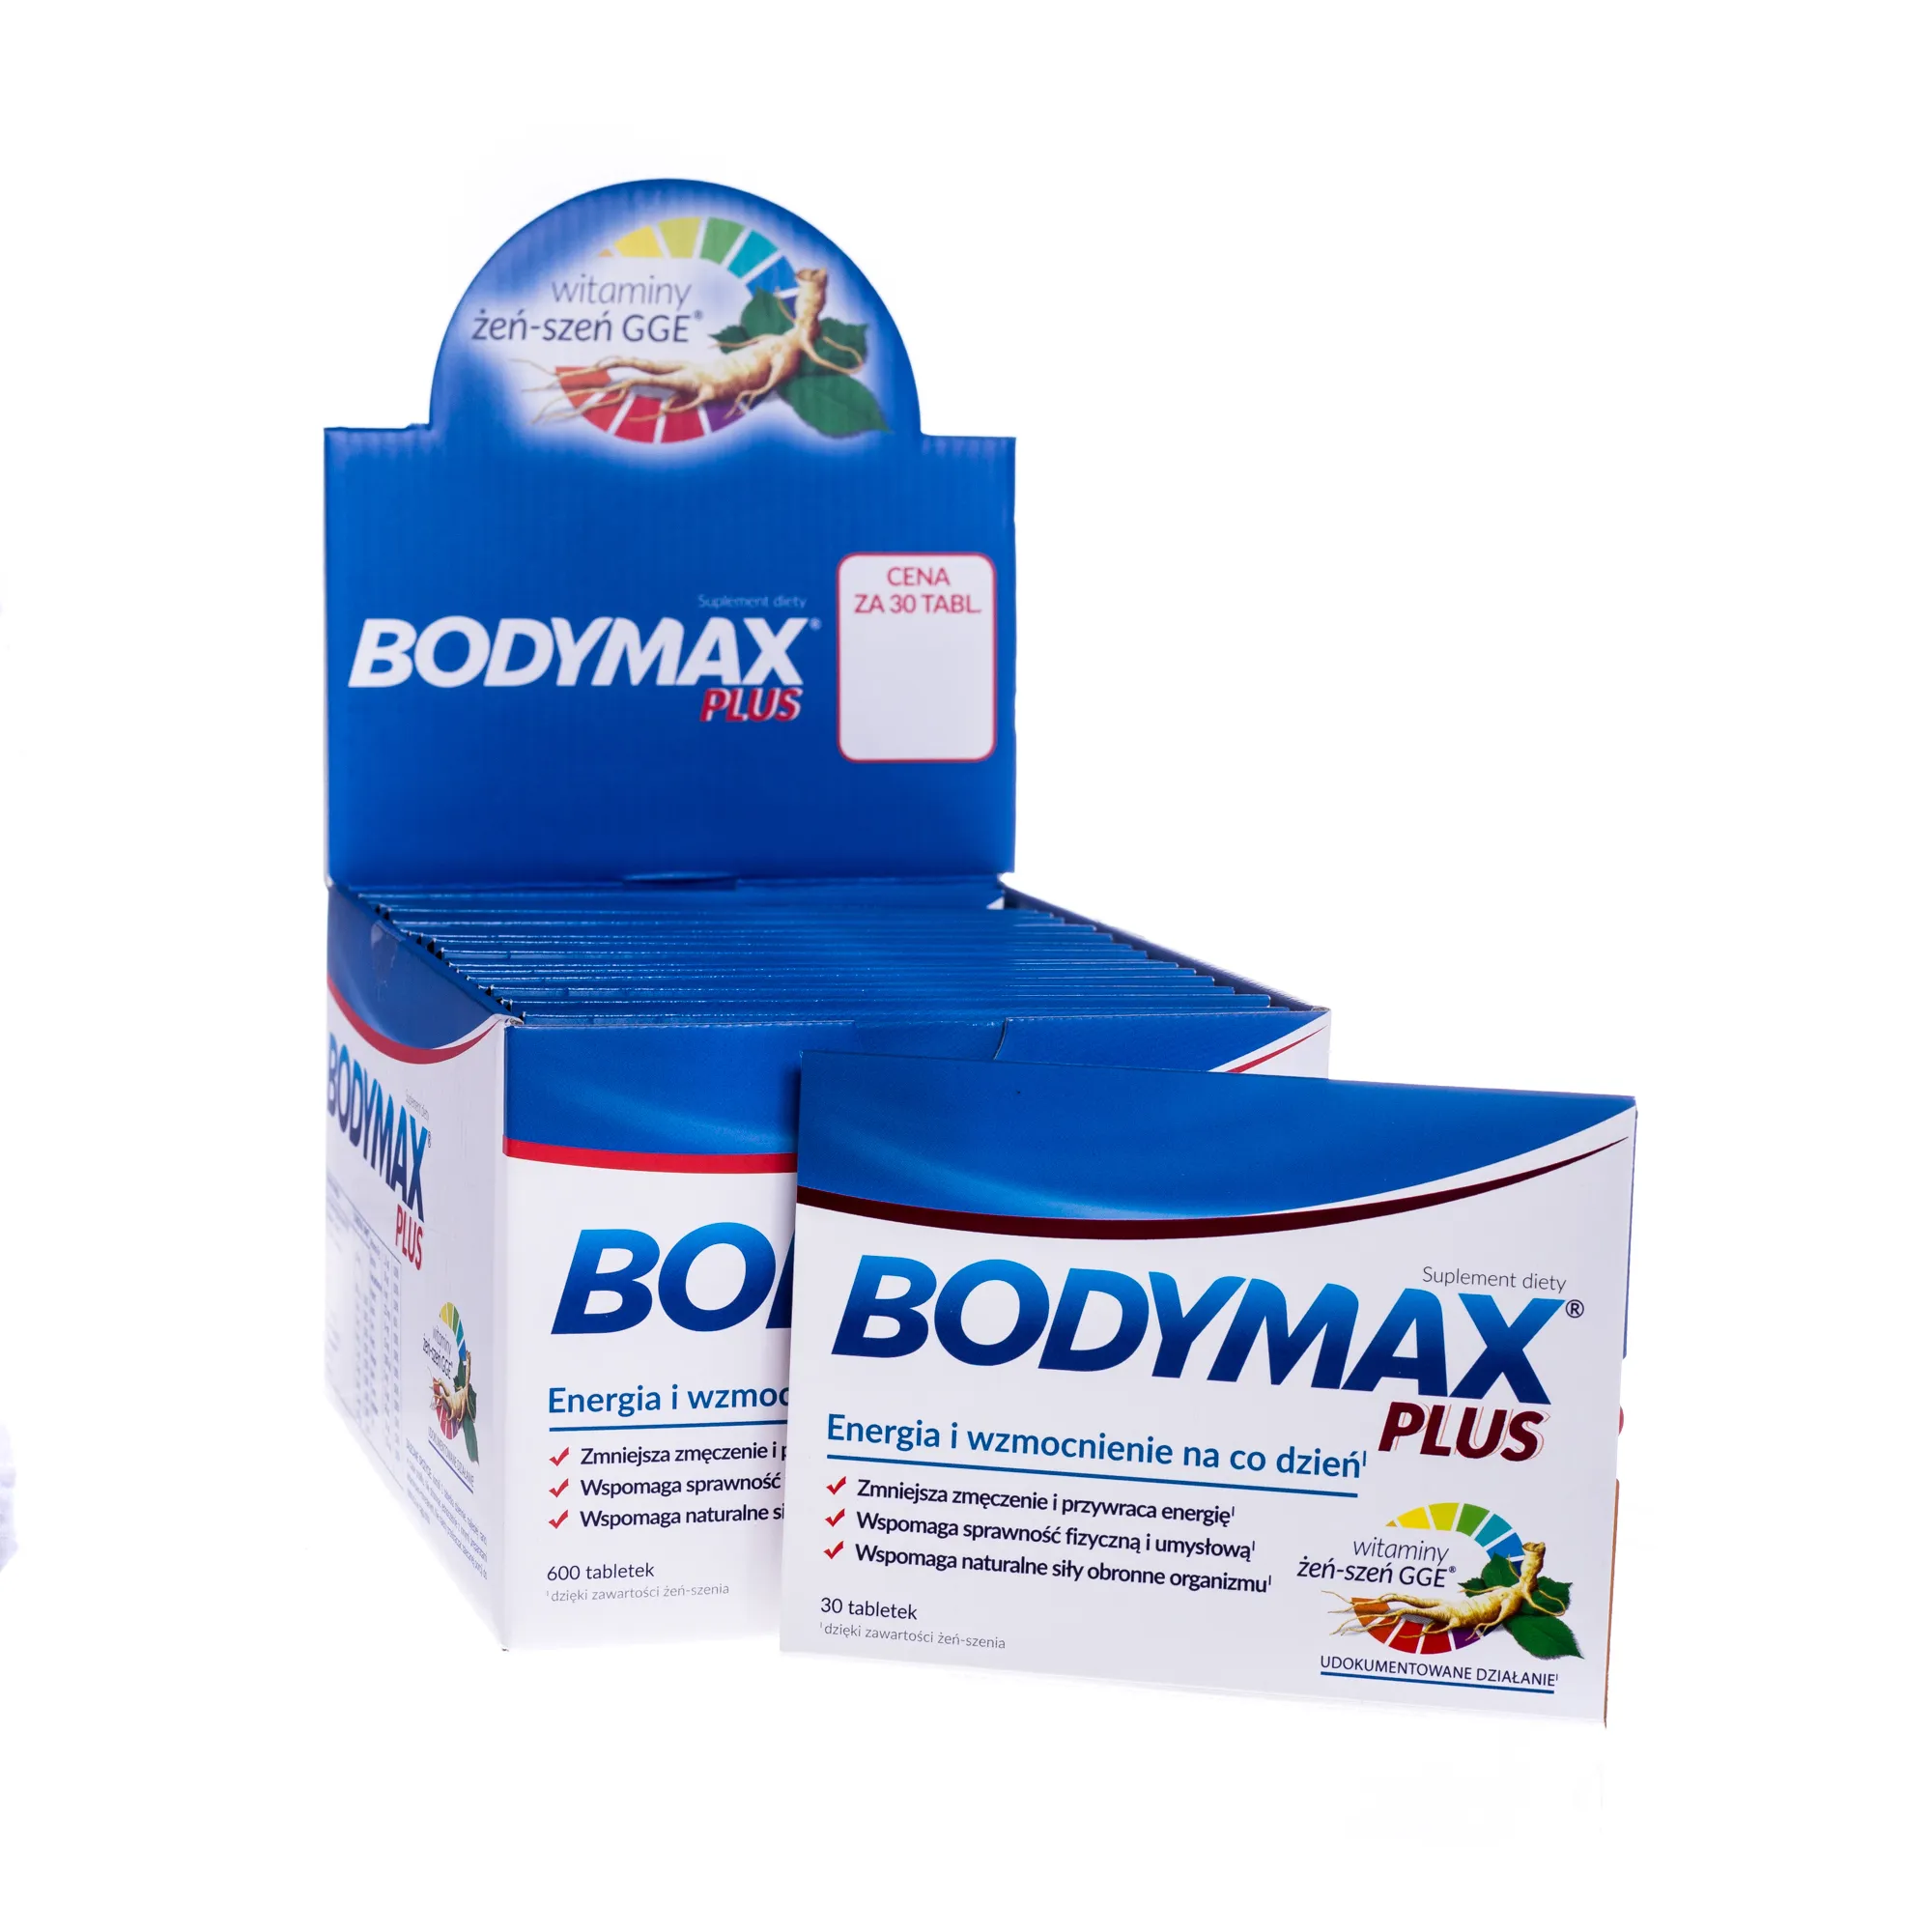 Bodymax Plus, suplement diety, 600 tabletek 